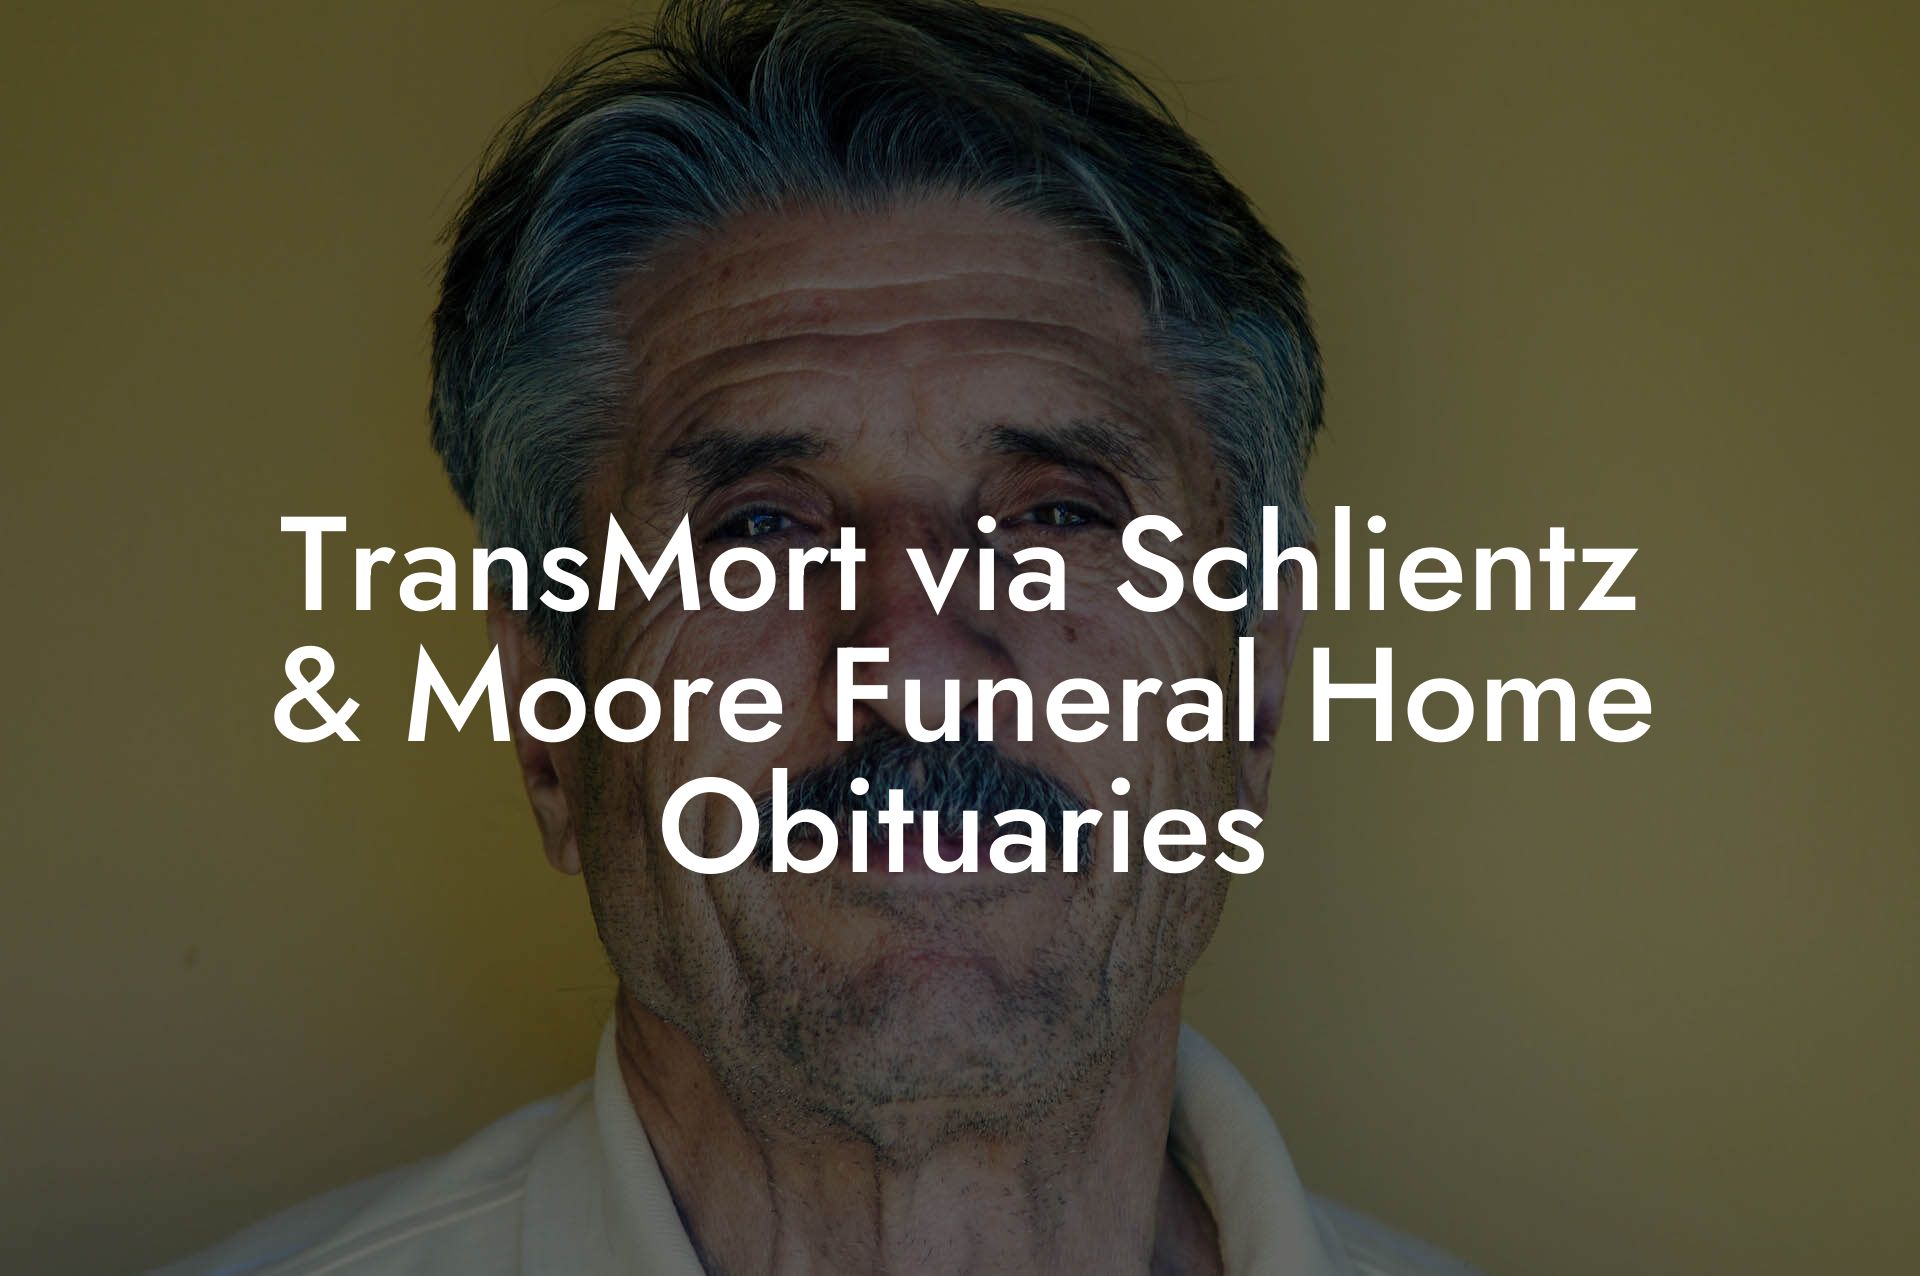 TransMort via Schlientz & Moore Funeral Home Obituaries